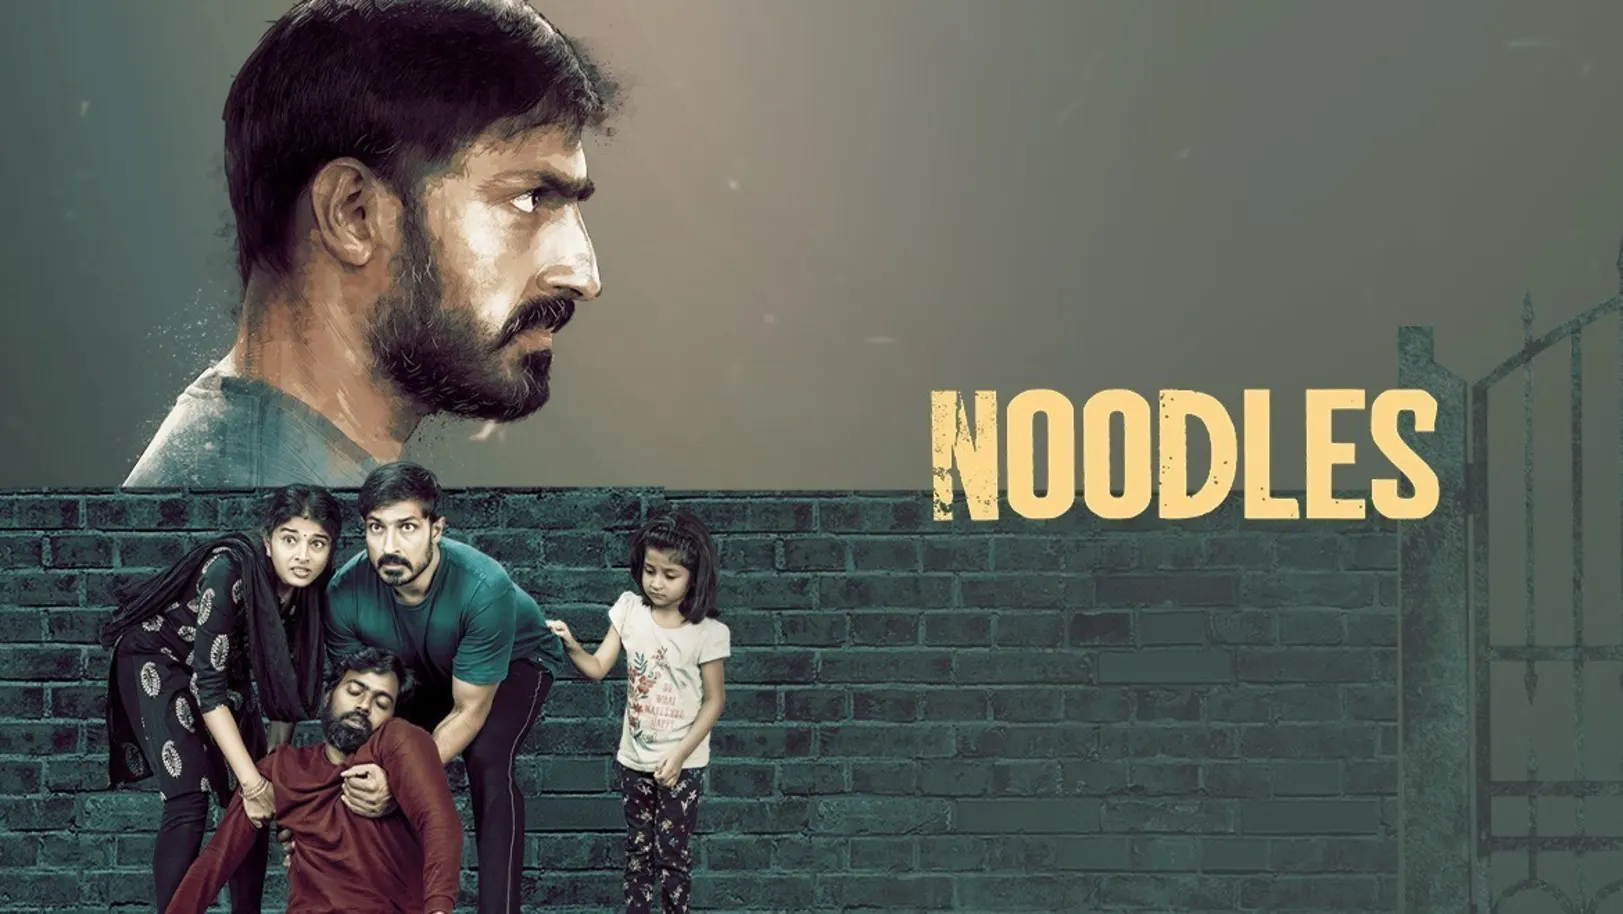 Noodles Movie